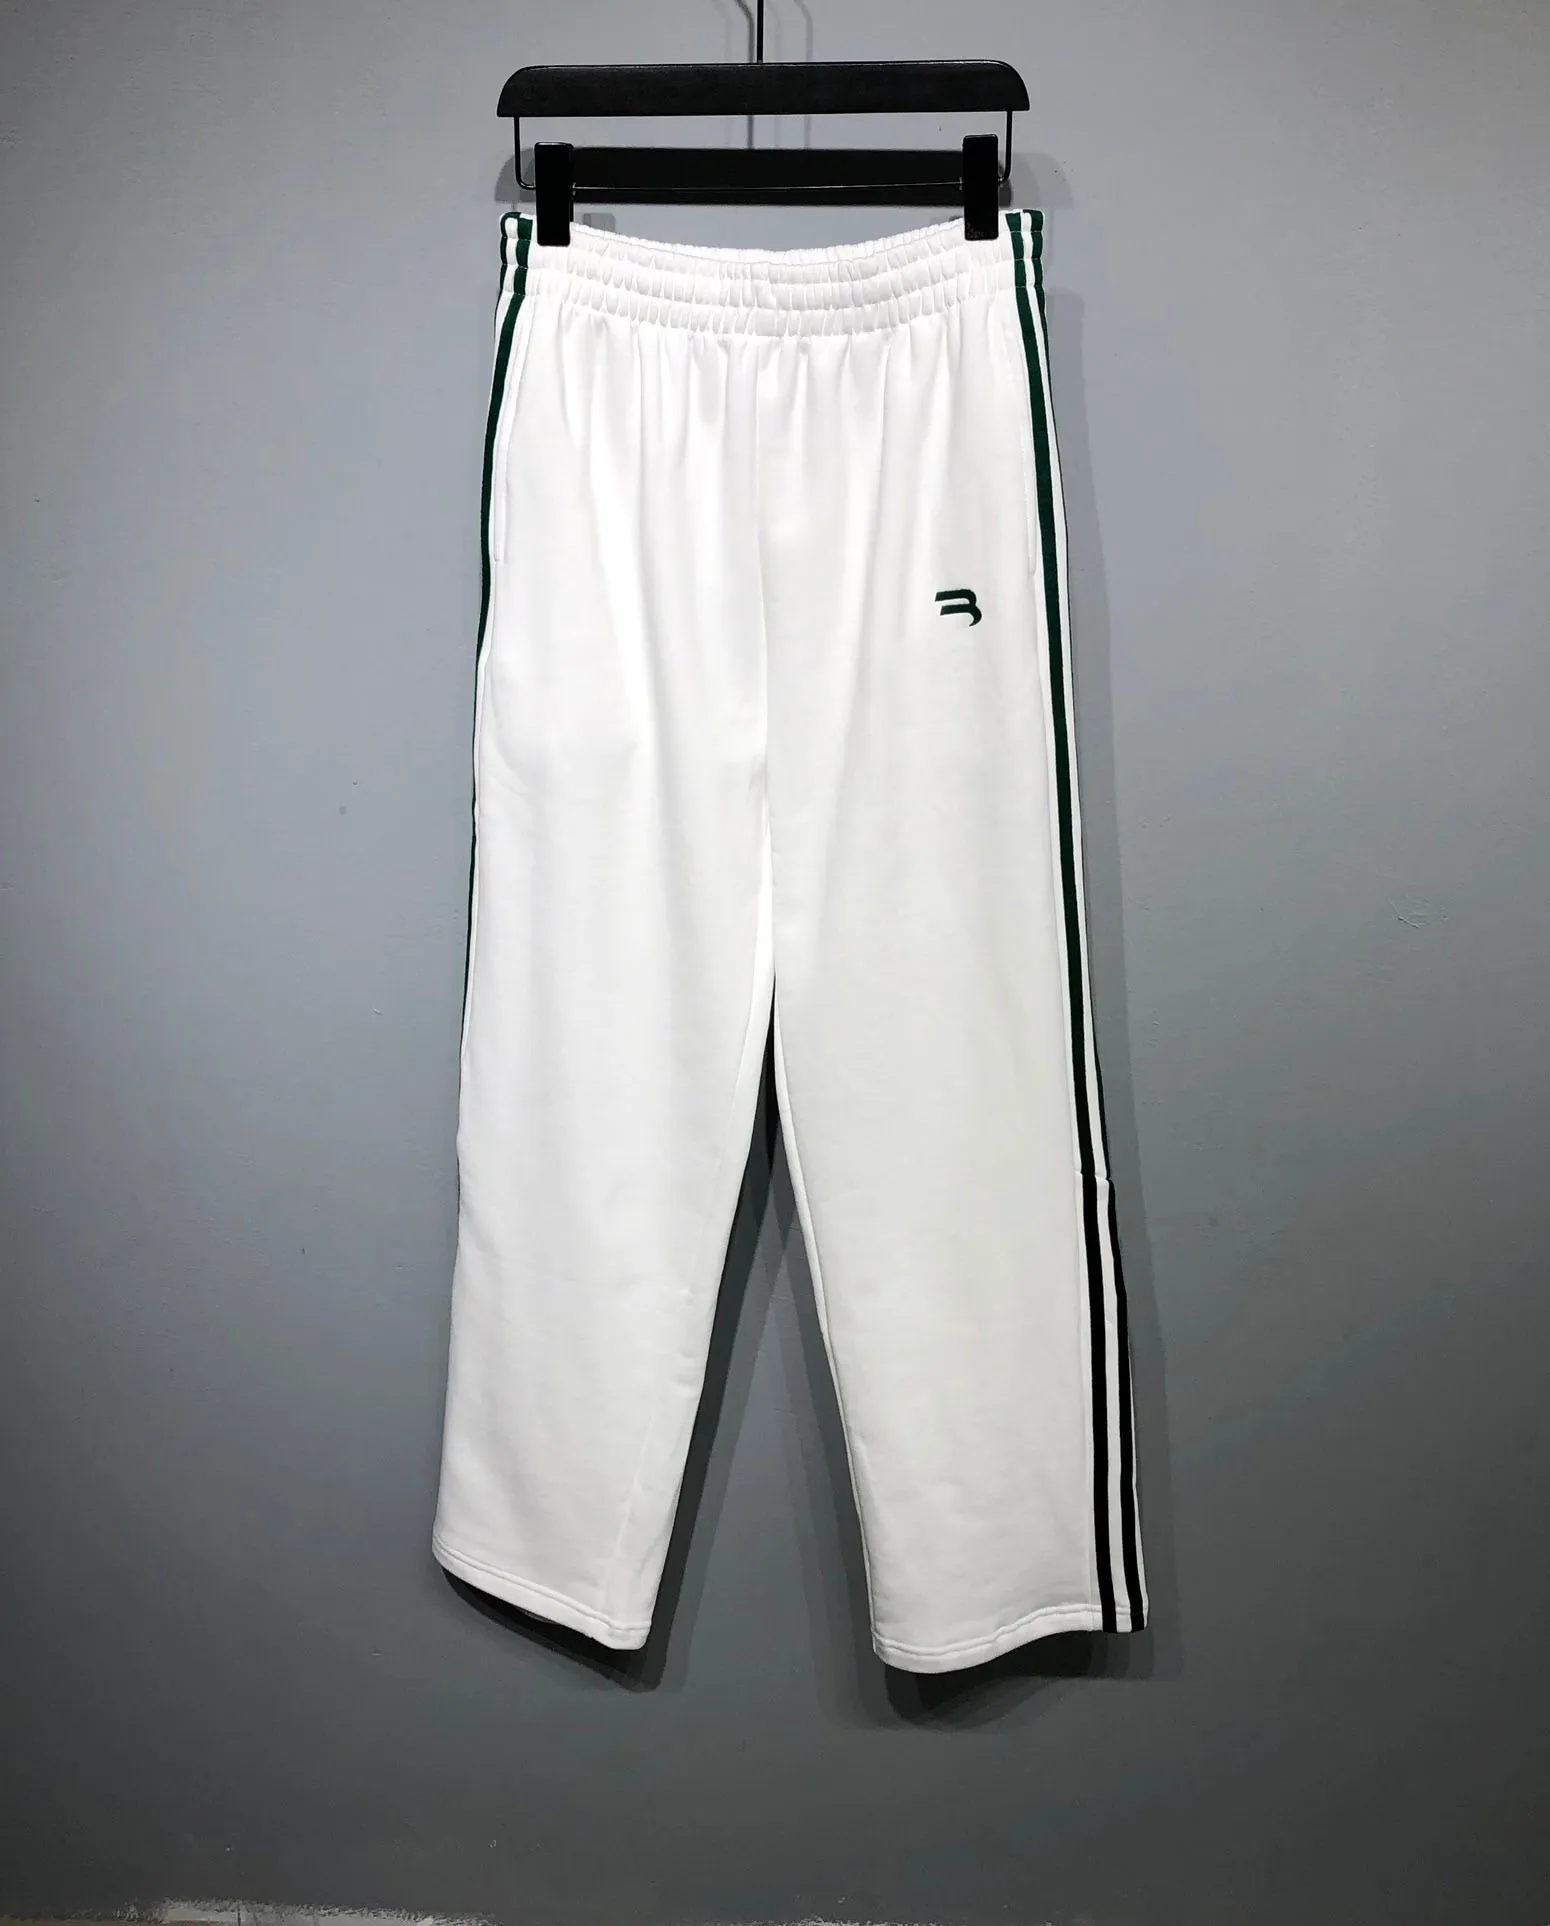 Herren-Shorts in Übergröße im Polar-Stil für Sommerkleidung mit Strandoutfit aus reiner Baumwolle ert4